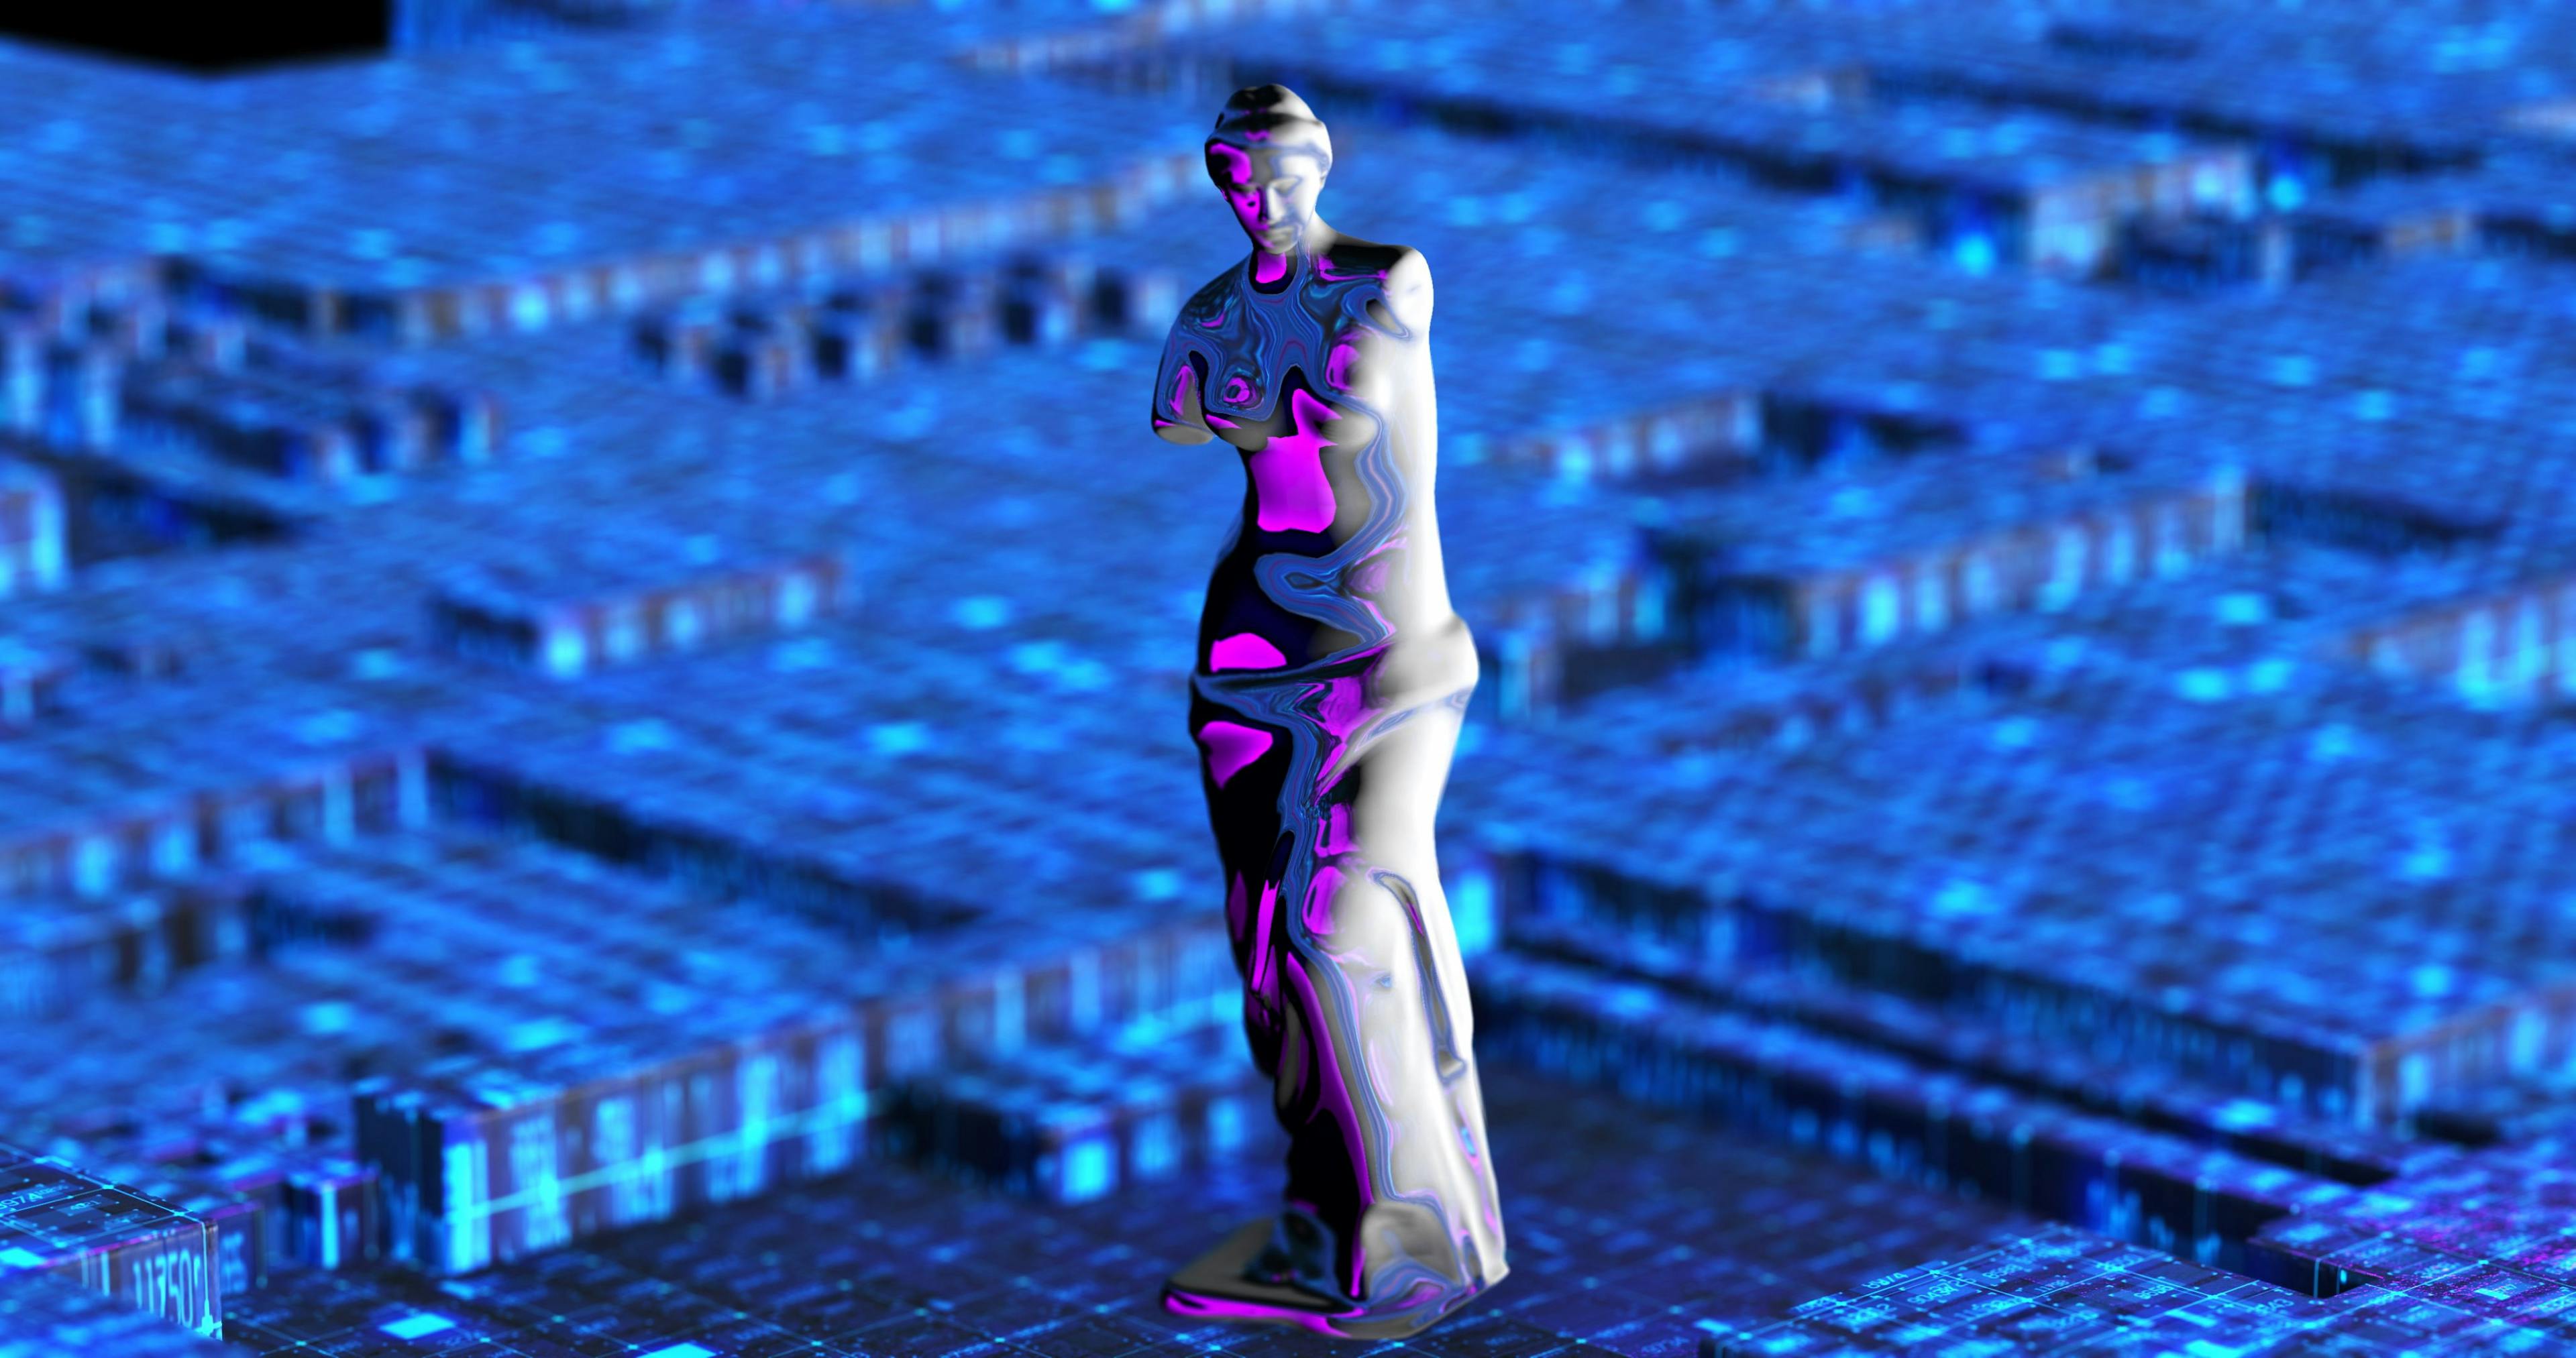 The sculpture Venus de Milo inside a computer motherboard